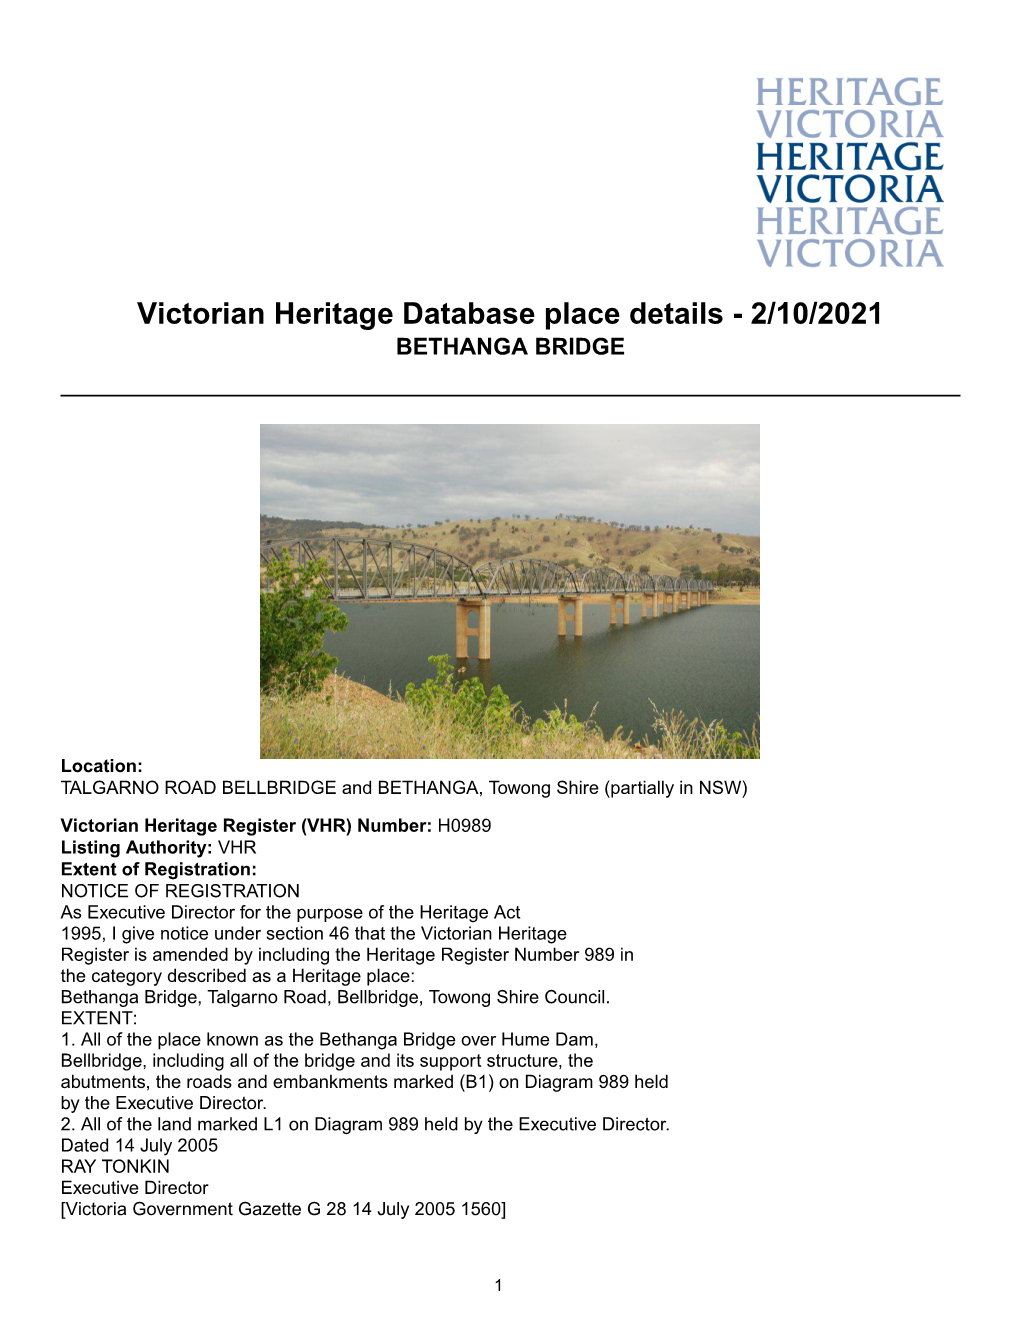 Victorian Heritage Database Place Details - 2/10/2021 BETHANGA BRIDGE